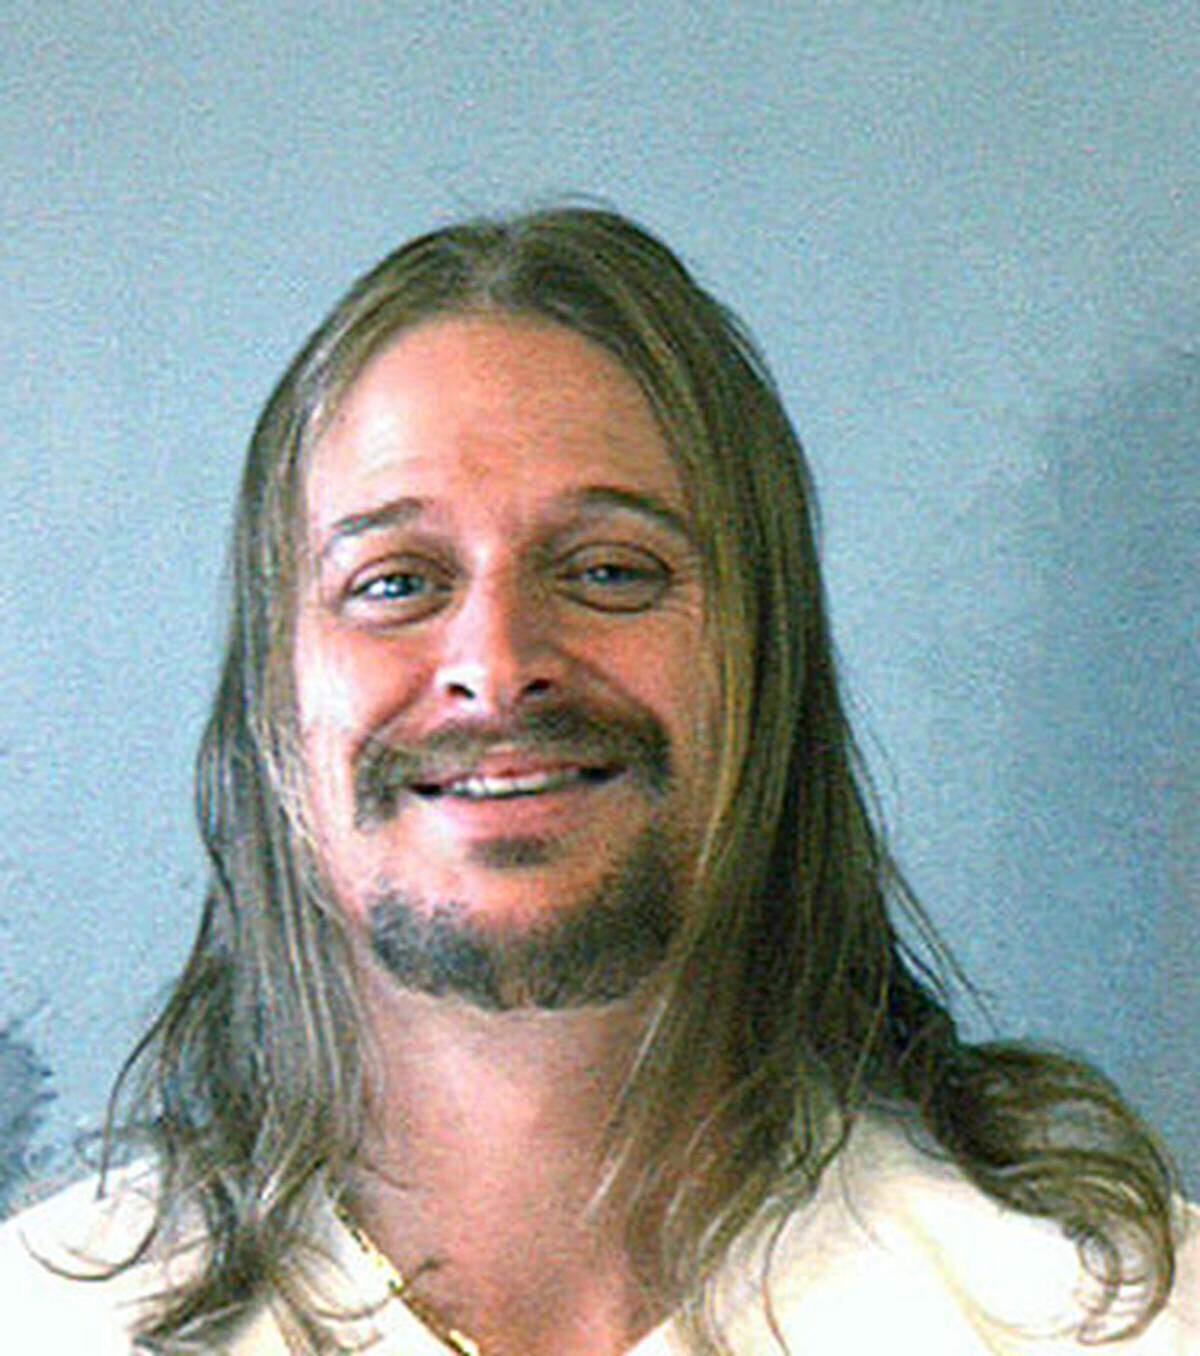 Ein Porträt von Robert James Ritchie vulgo Kid Rock nachdem er am 21. Oktober 2007 wegen einer Schlägerei in einer Waffel-Bäckerei verhaftet worden ist.